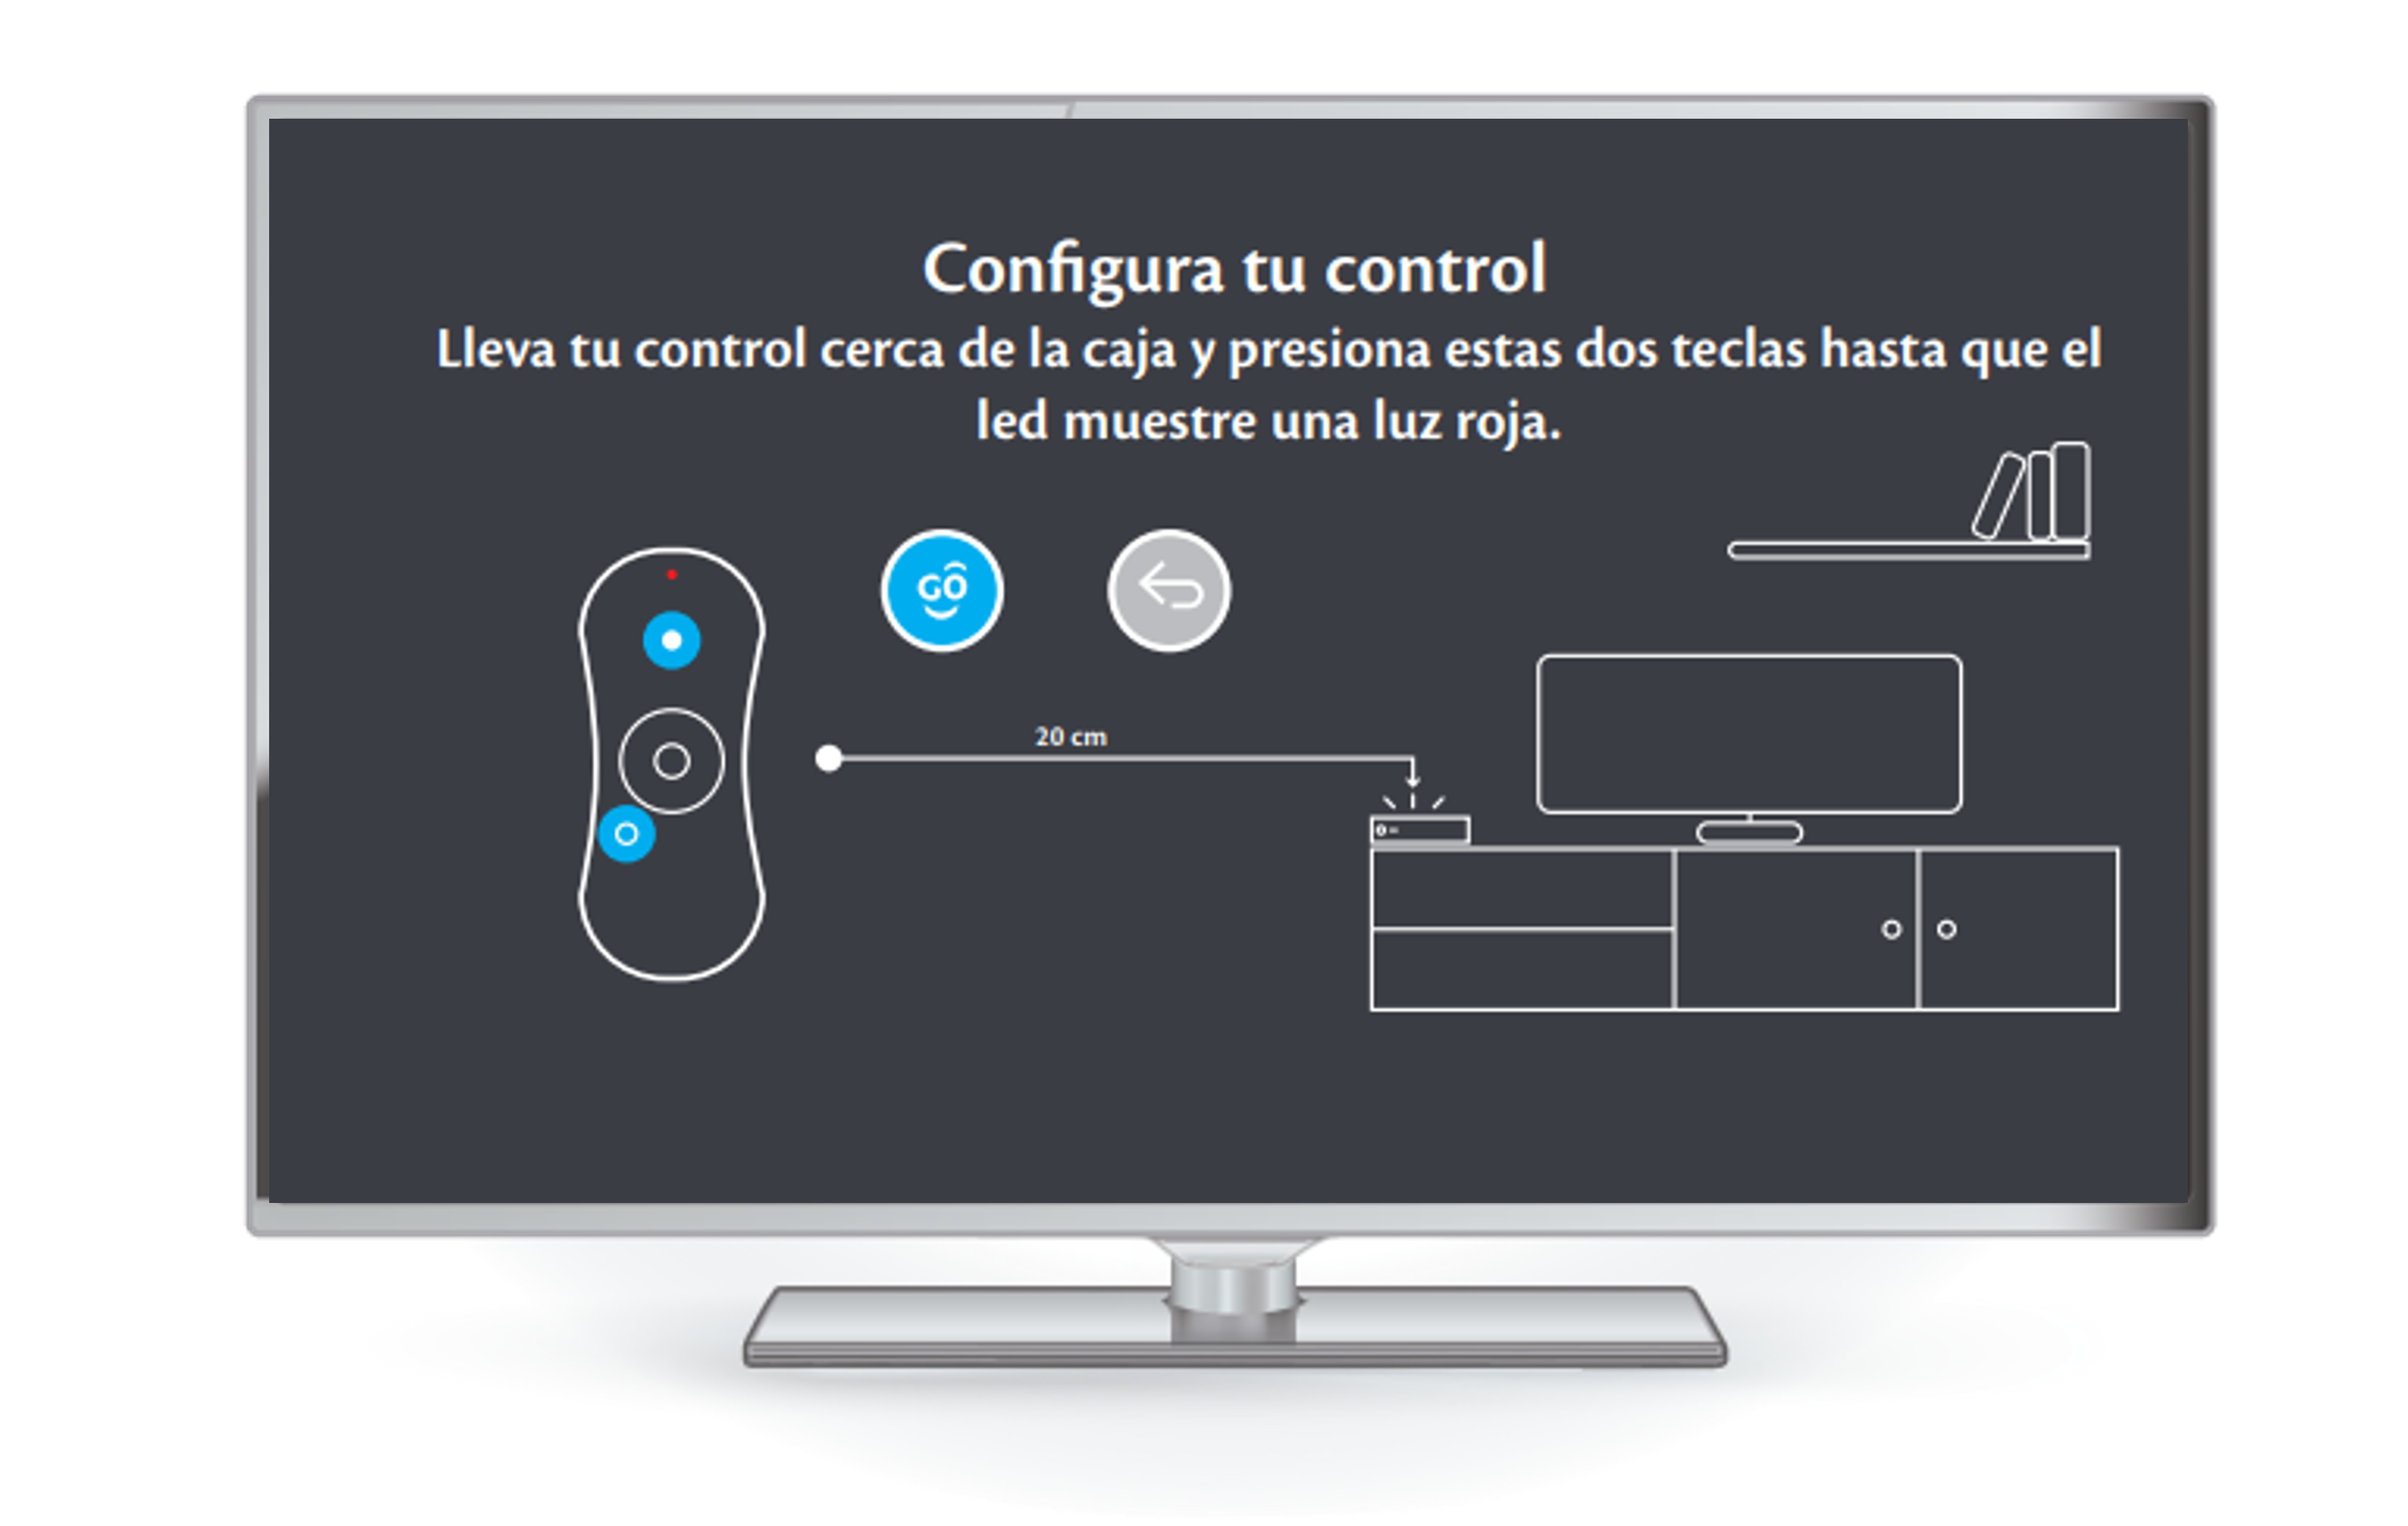 Autoinstalar_y_configurar_caja_arris3.png